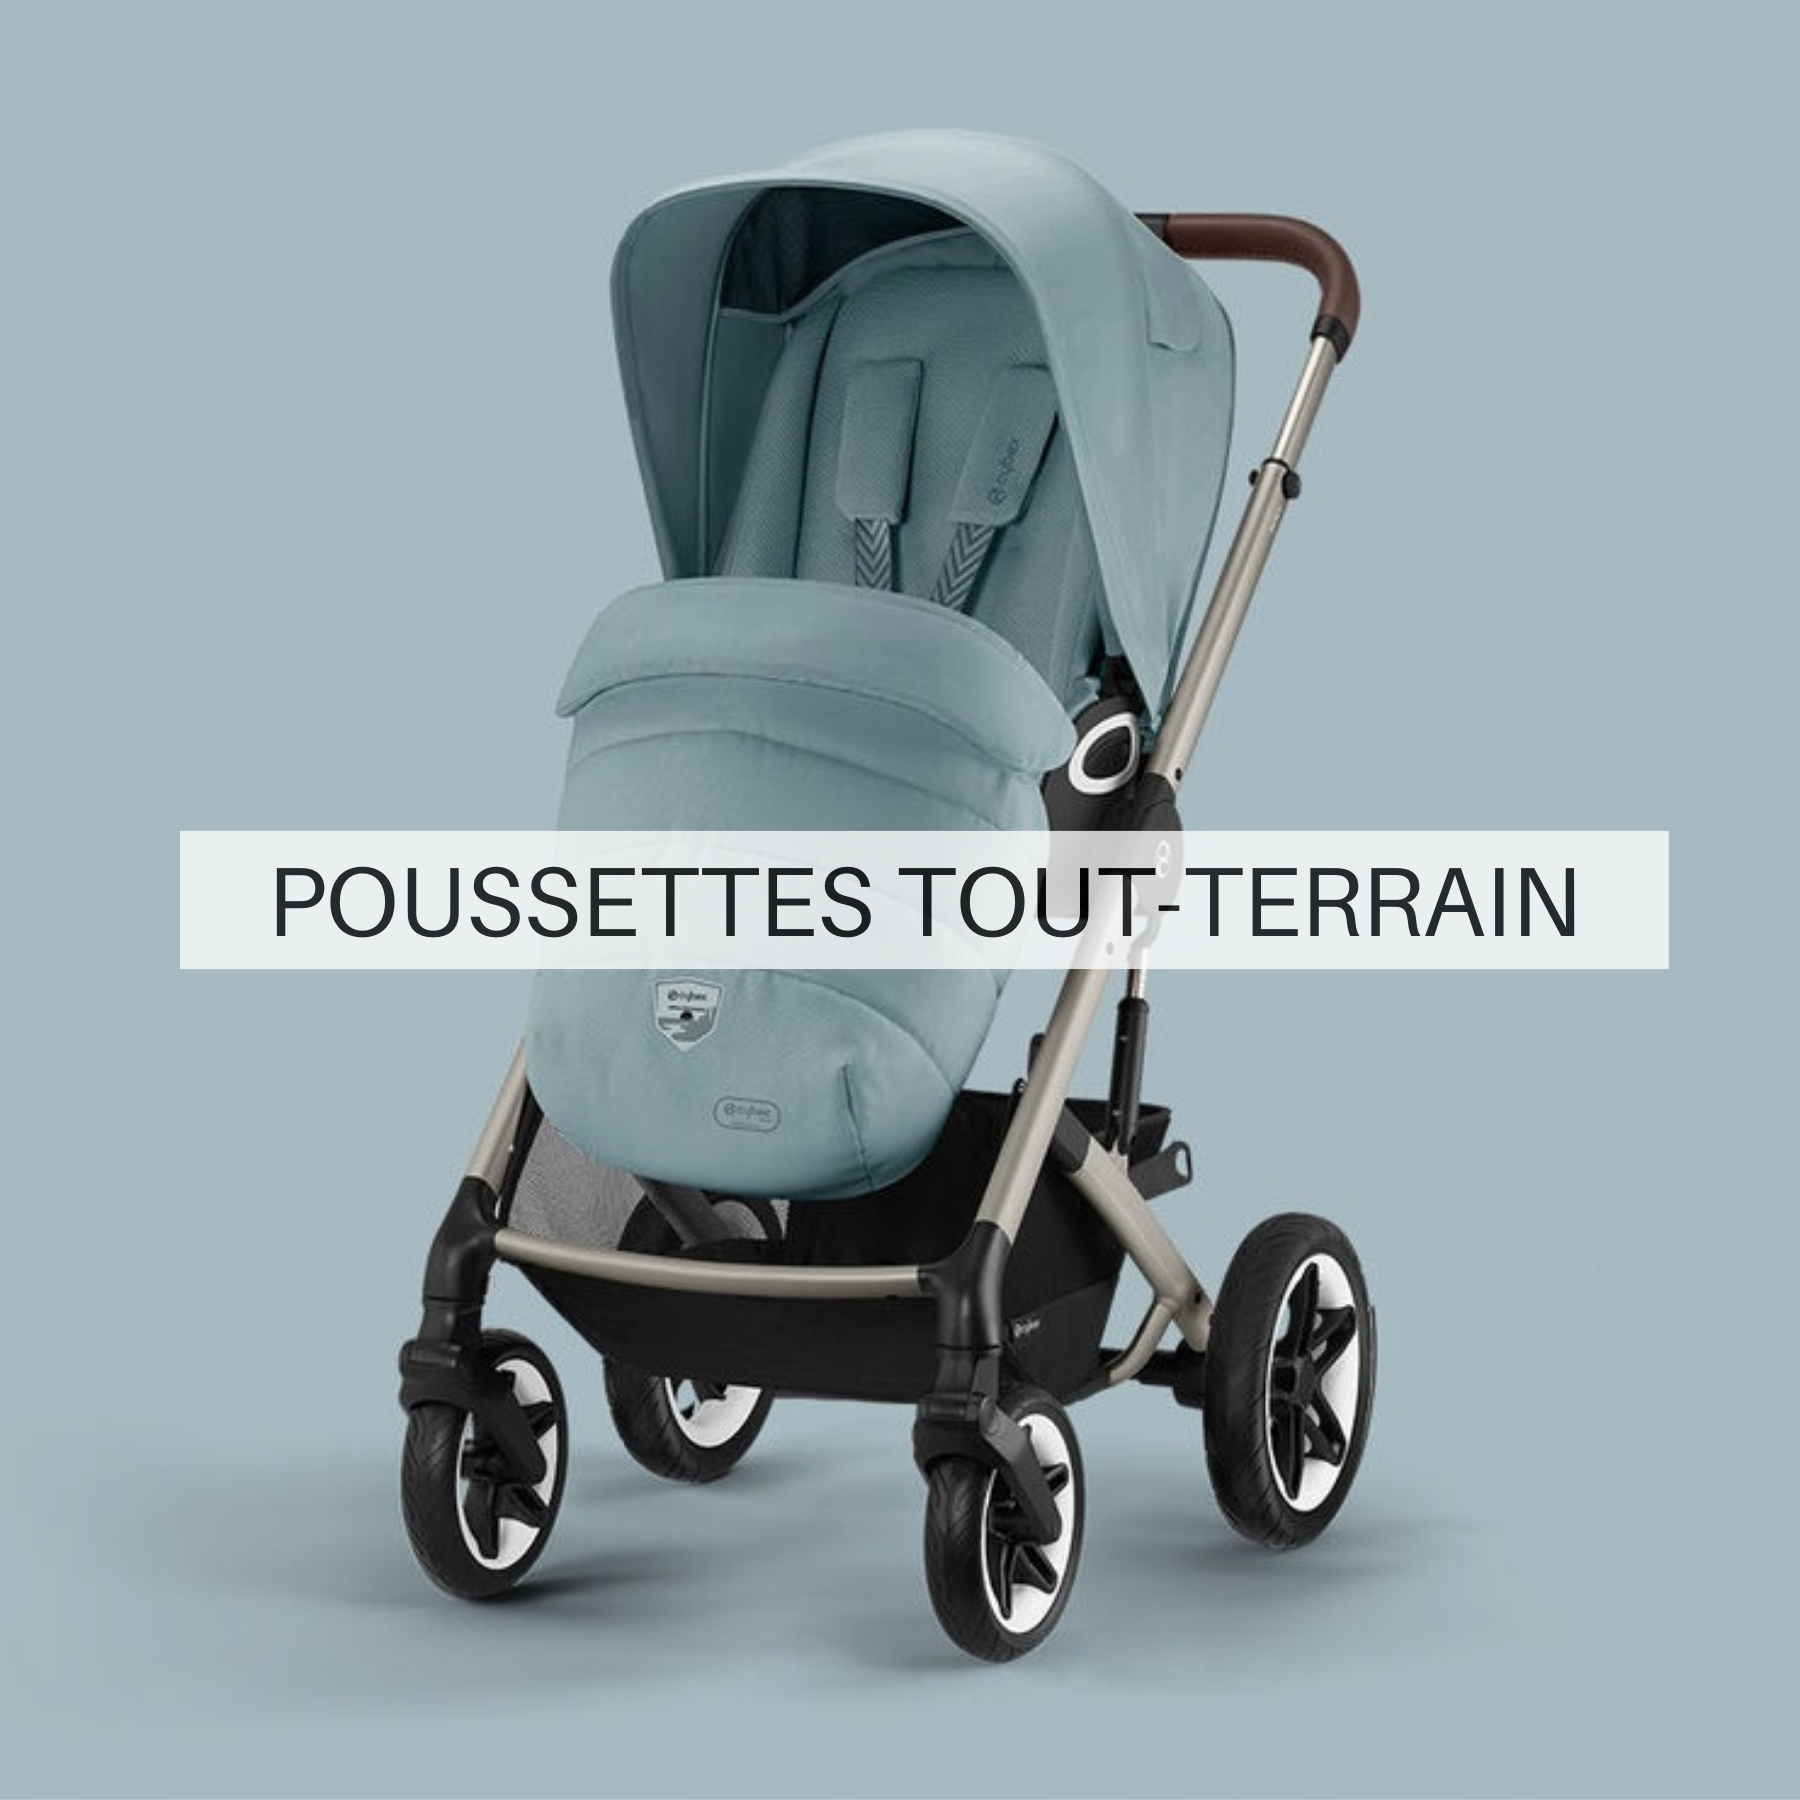 Babyset pour chaise haute TOBO Bois de Rose Charlie Crane - Dröm